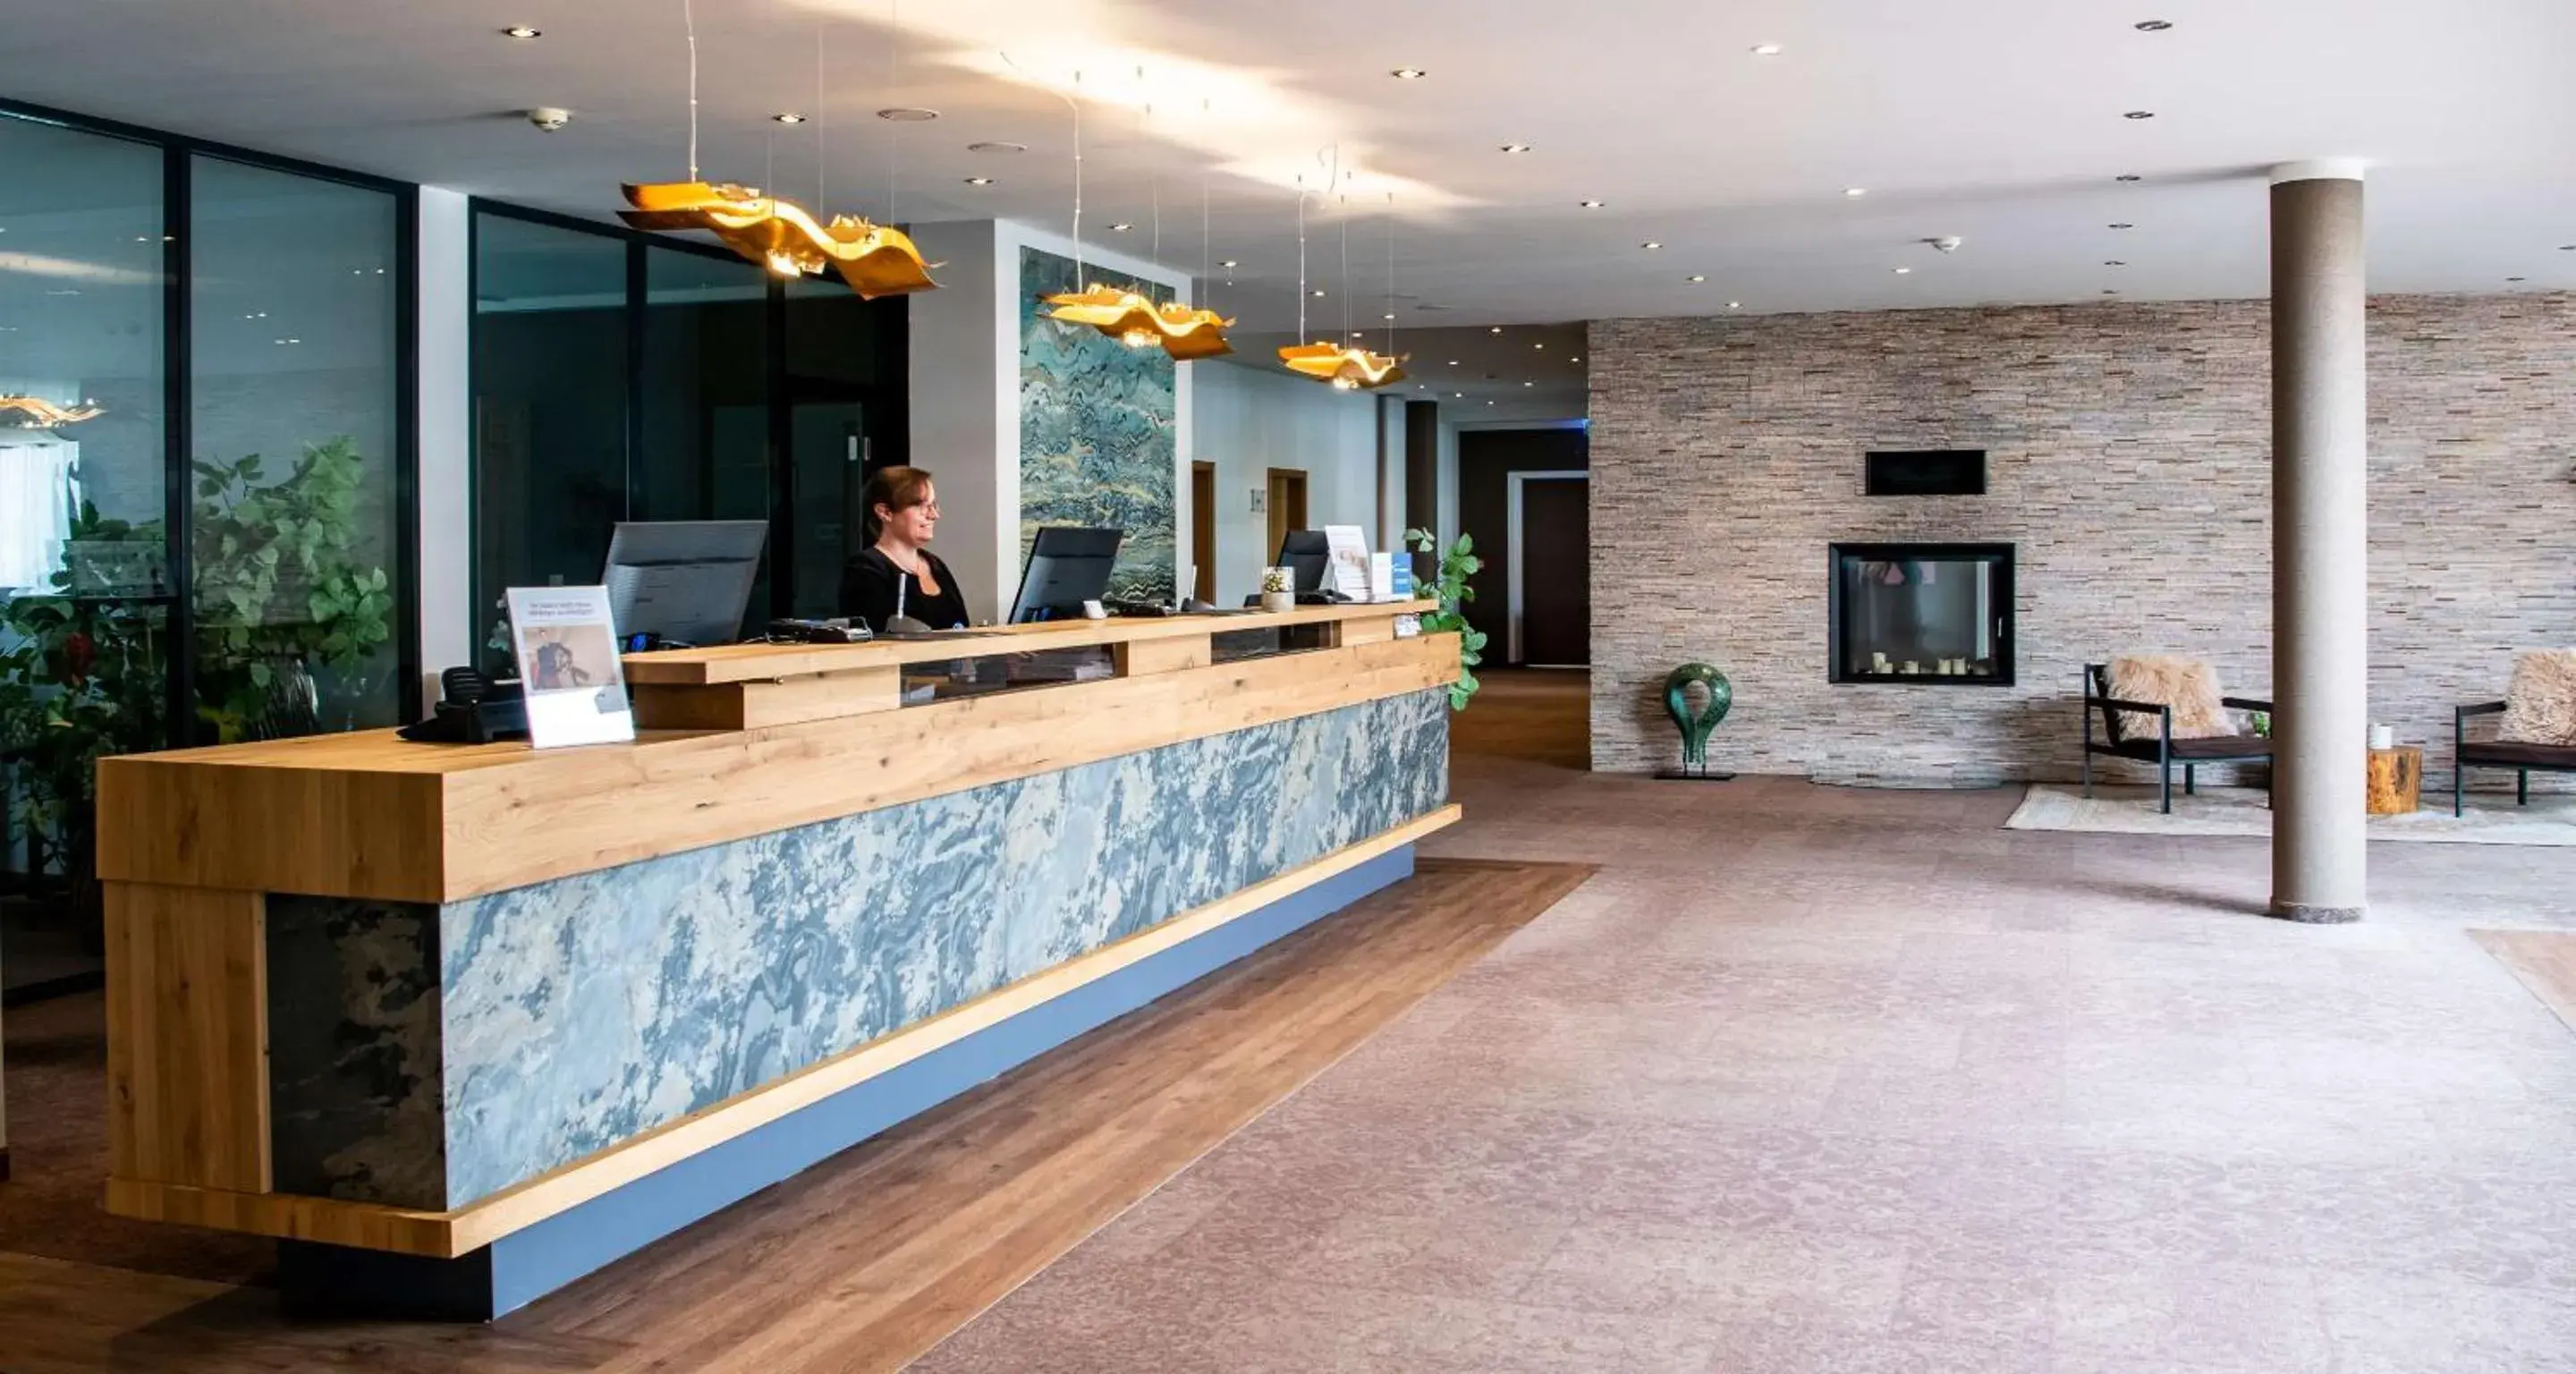 Lobby or reception, Lobby/Reception in Best Western Plus iO Hotel